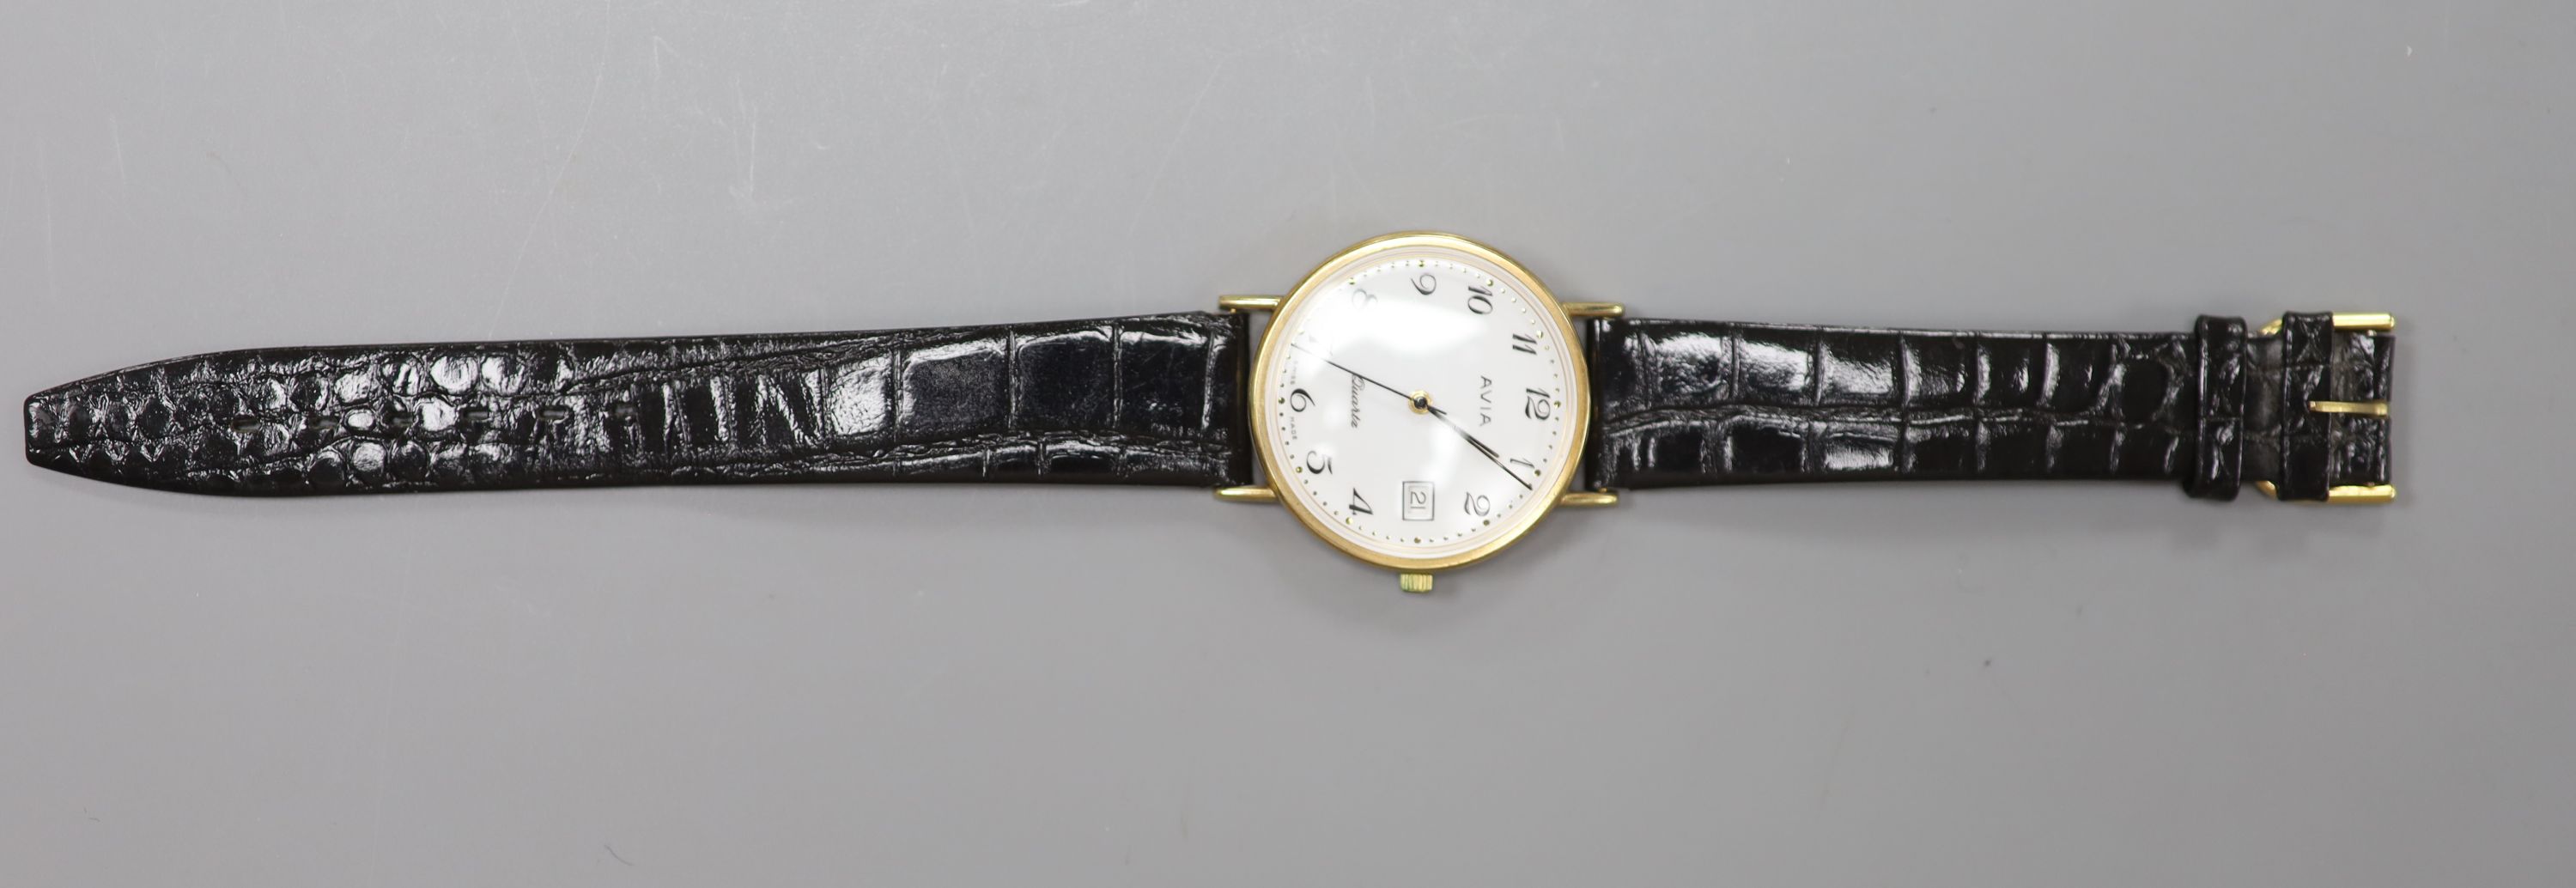 A gentleman's modern 9ct gold Avia quartz wrist watch, on associated strap, cased diameter 33mm, gross weight 22.1 grams.